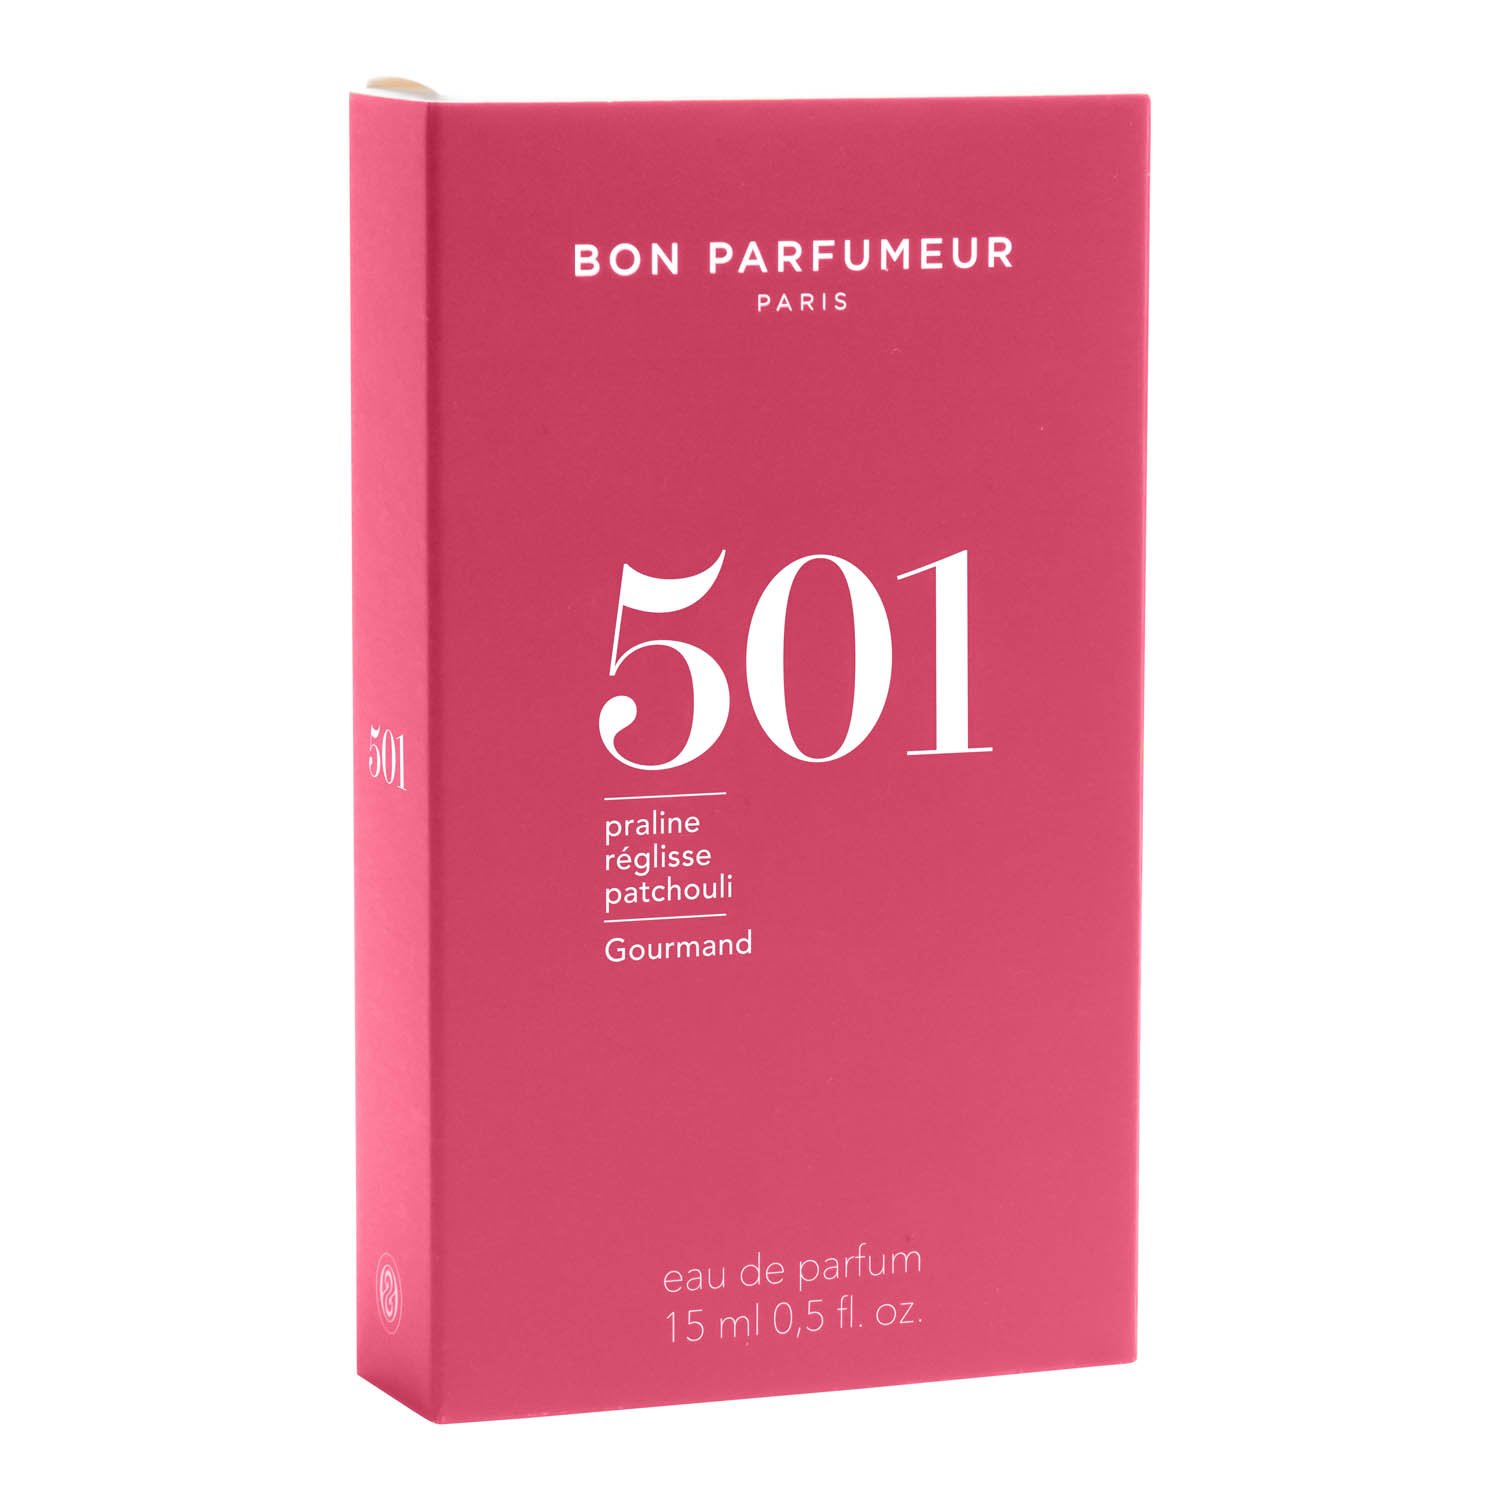 Bon Parfumeur Eau de Parfum 501 15 ml